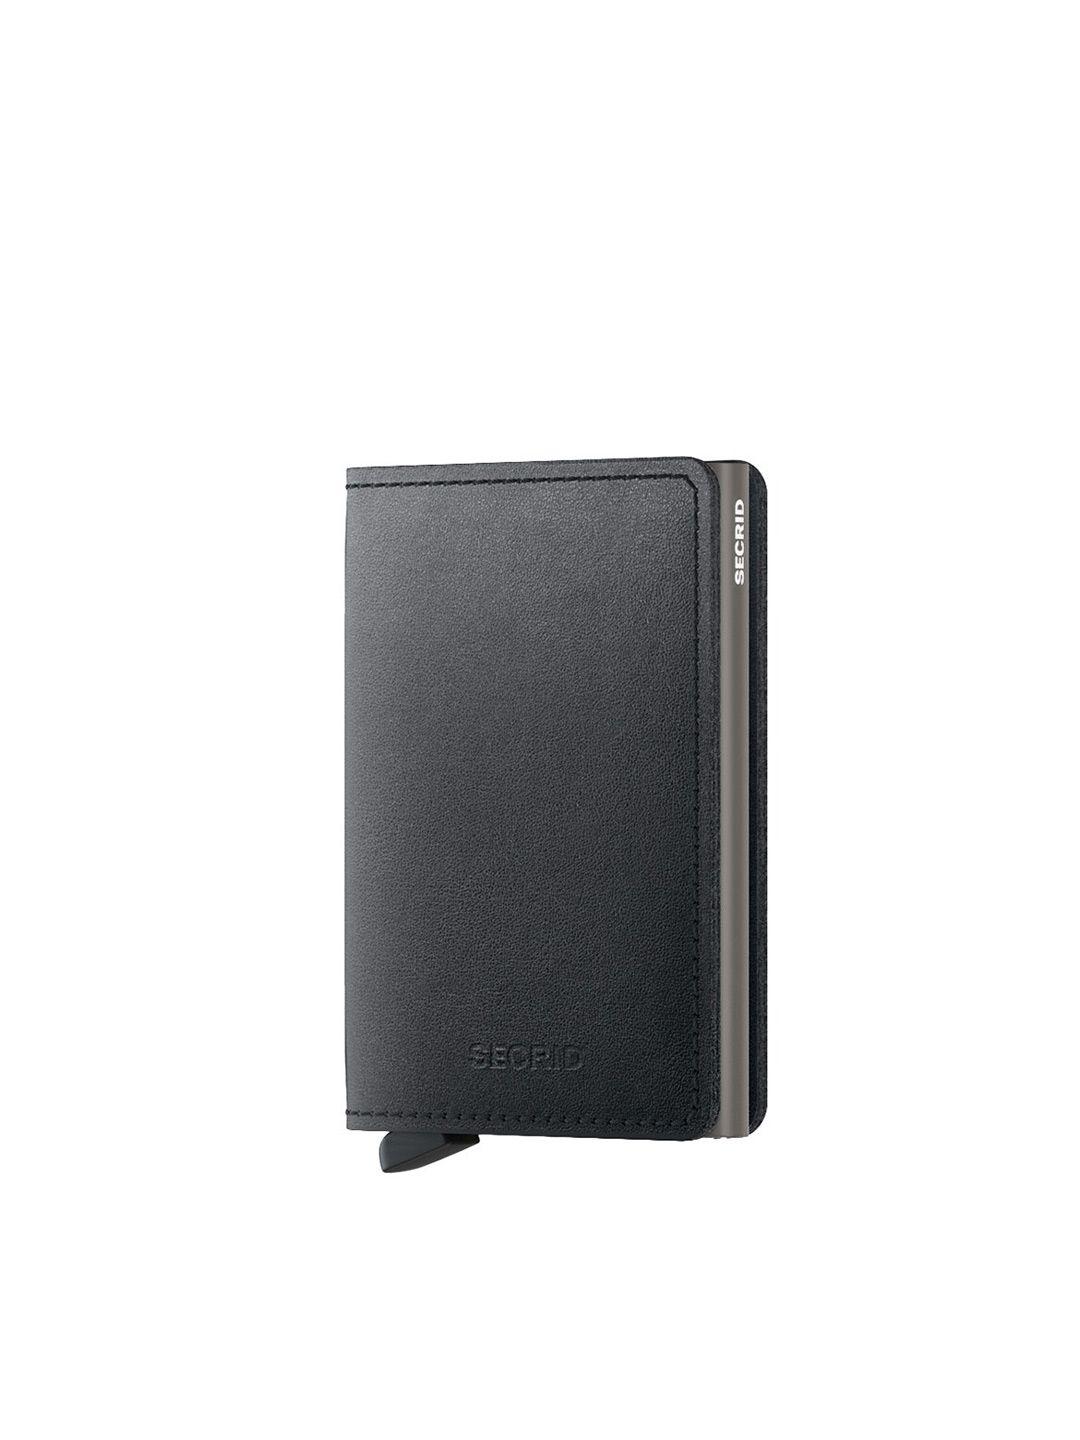 secrid leather card holder  wallet